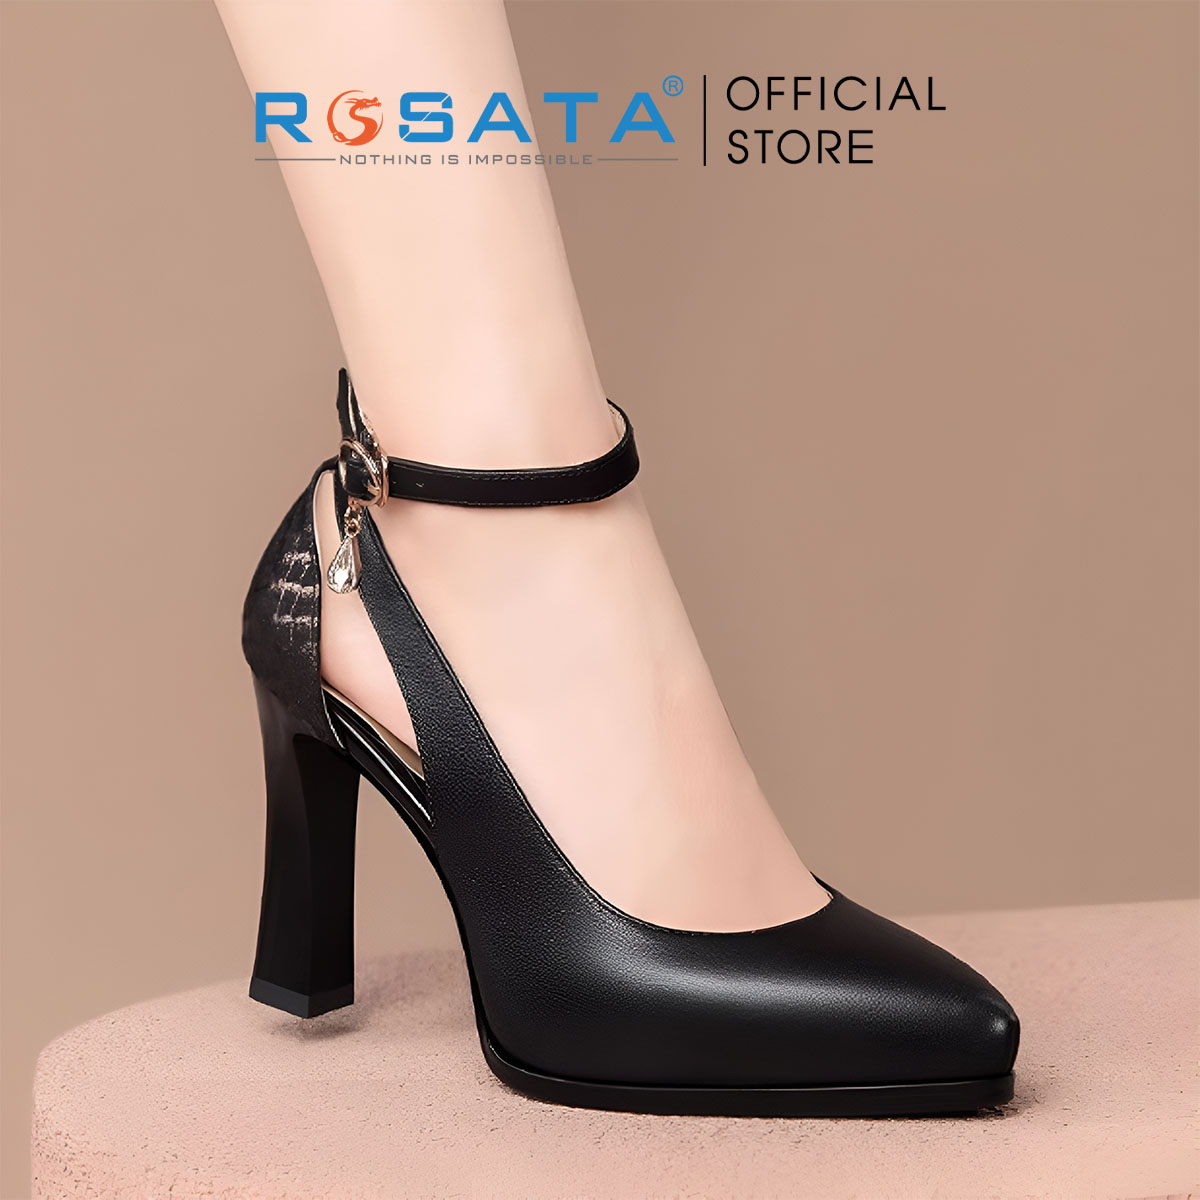 Giày nữ quai cài họa tiết sau gót ROSATA RO616 - 8p - Đen,Trắng - HÀNG VIỆT NAM - BKSTORE